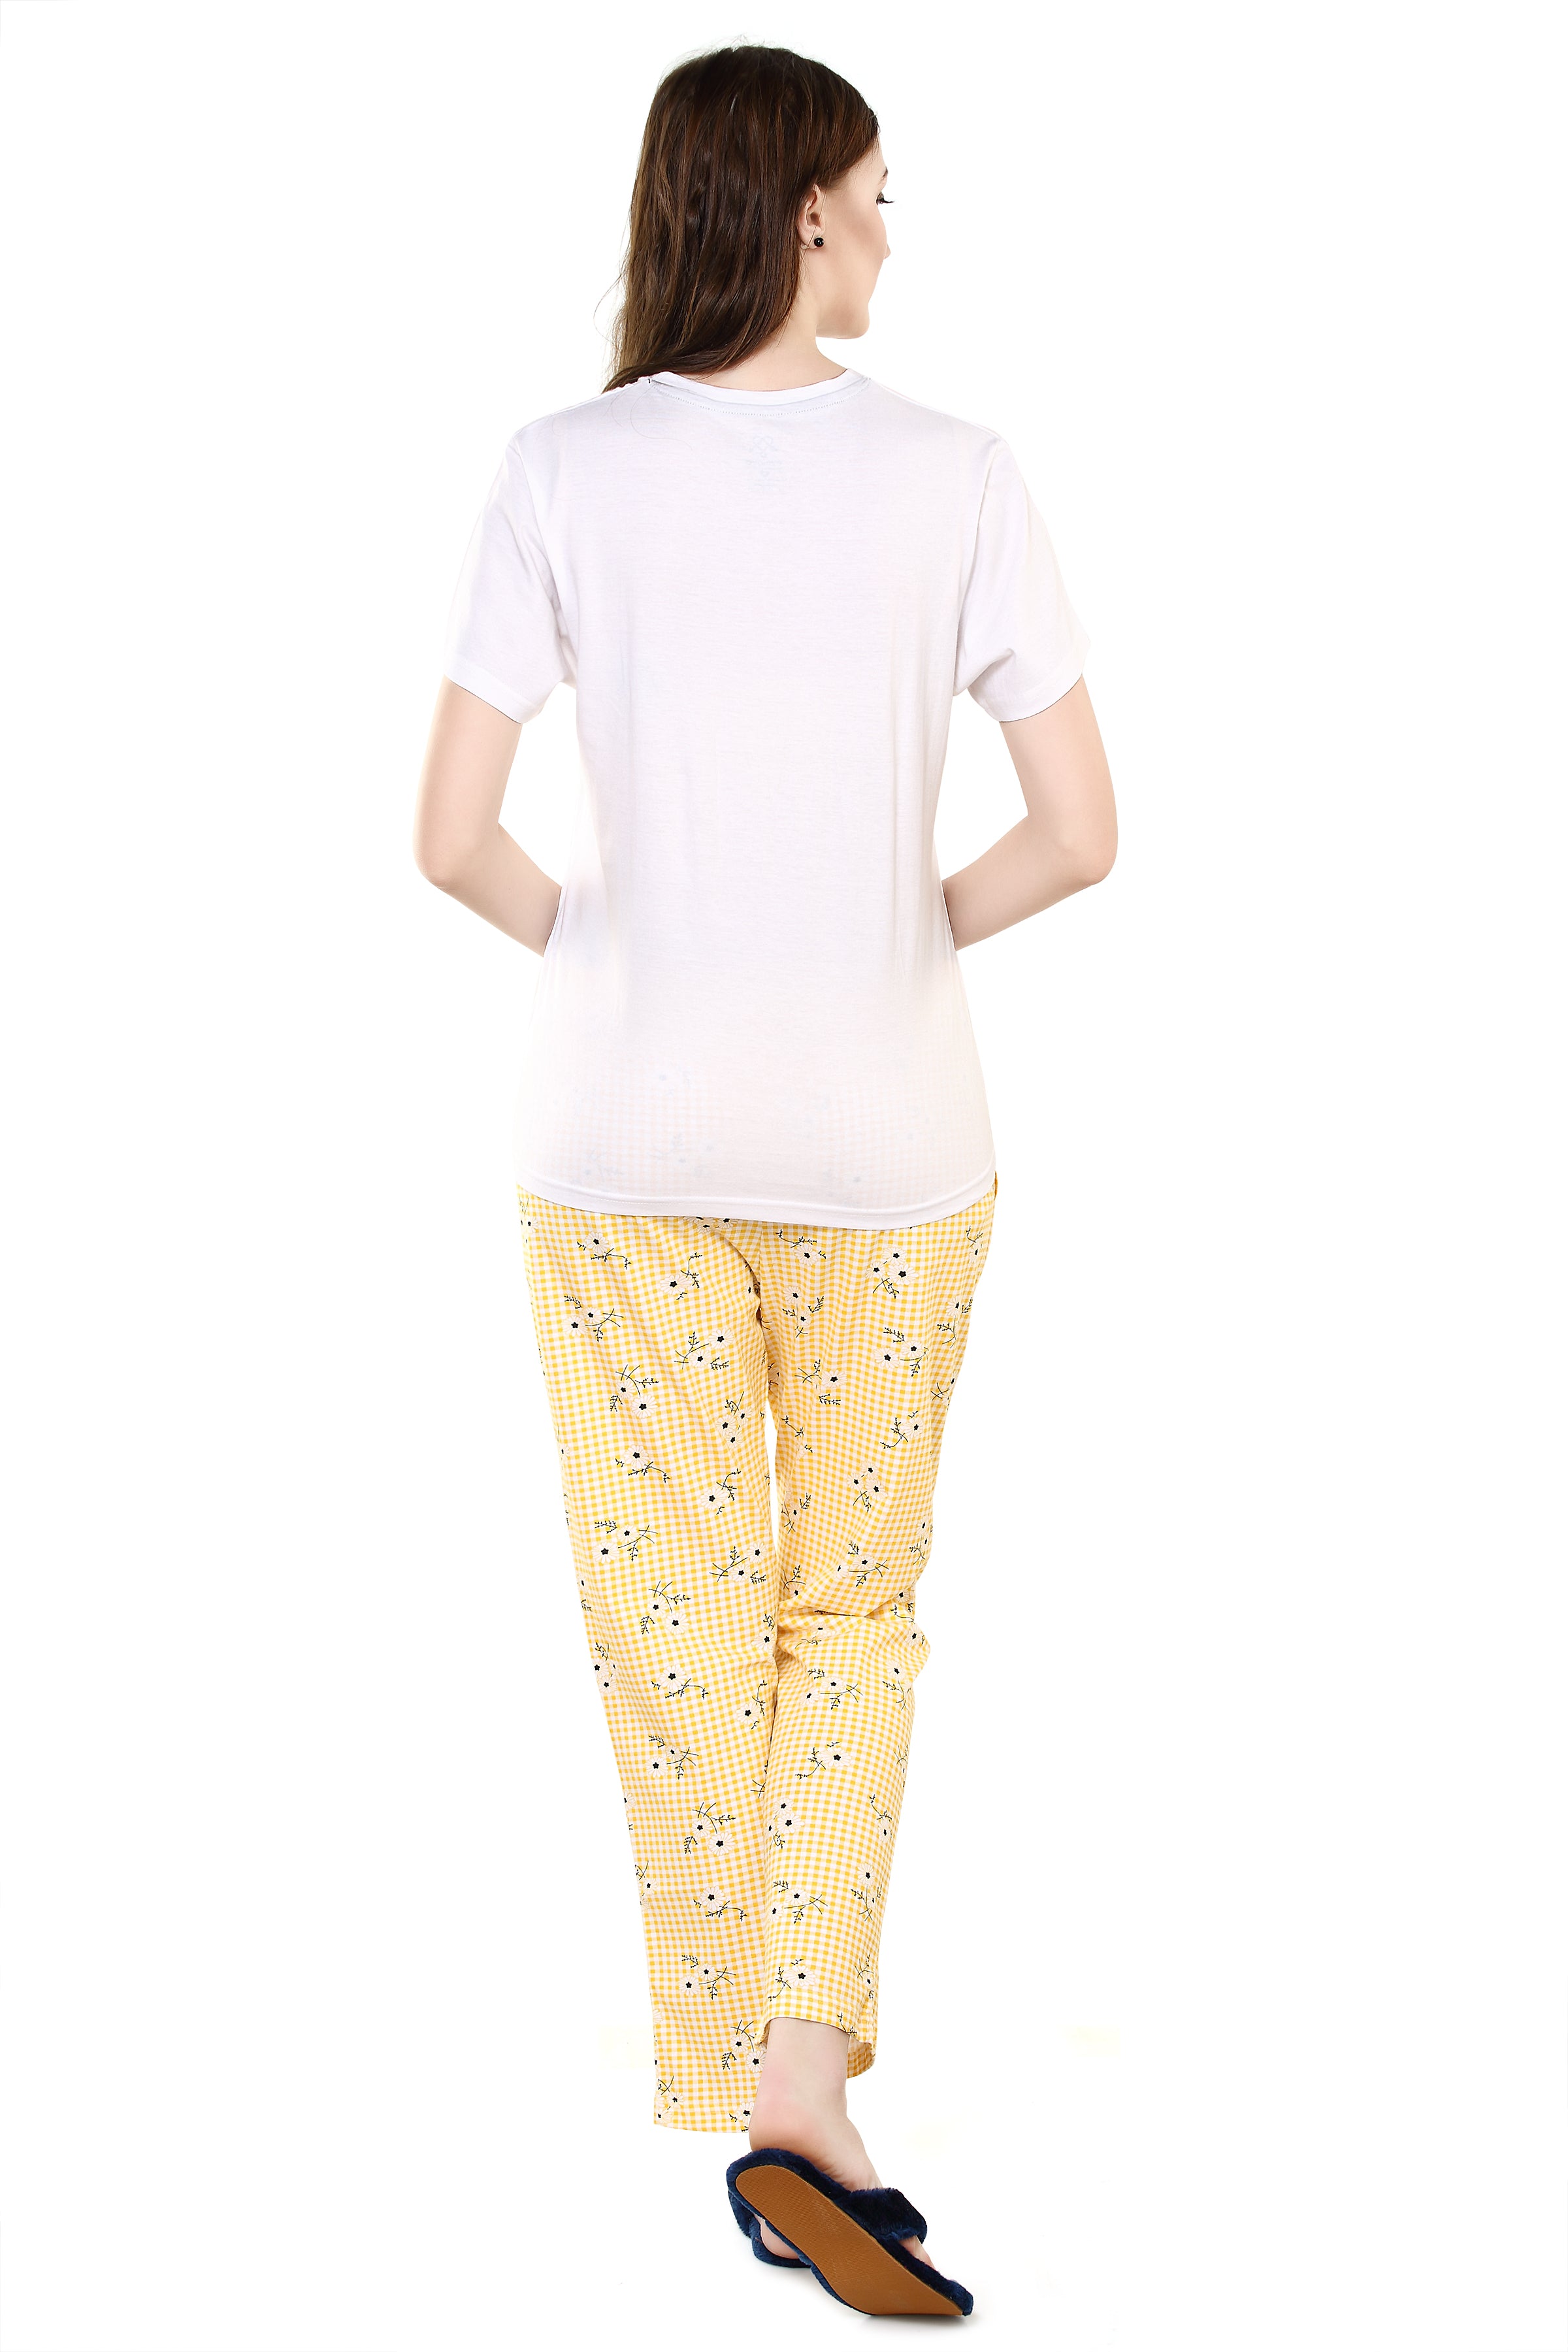 Evolove Cotton Womens Night Suit (Pajama Set)